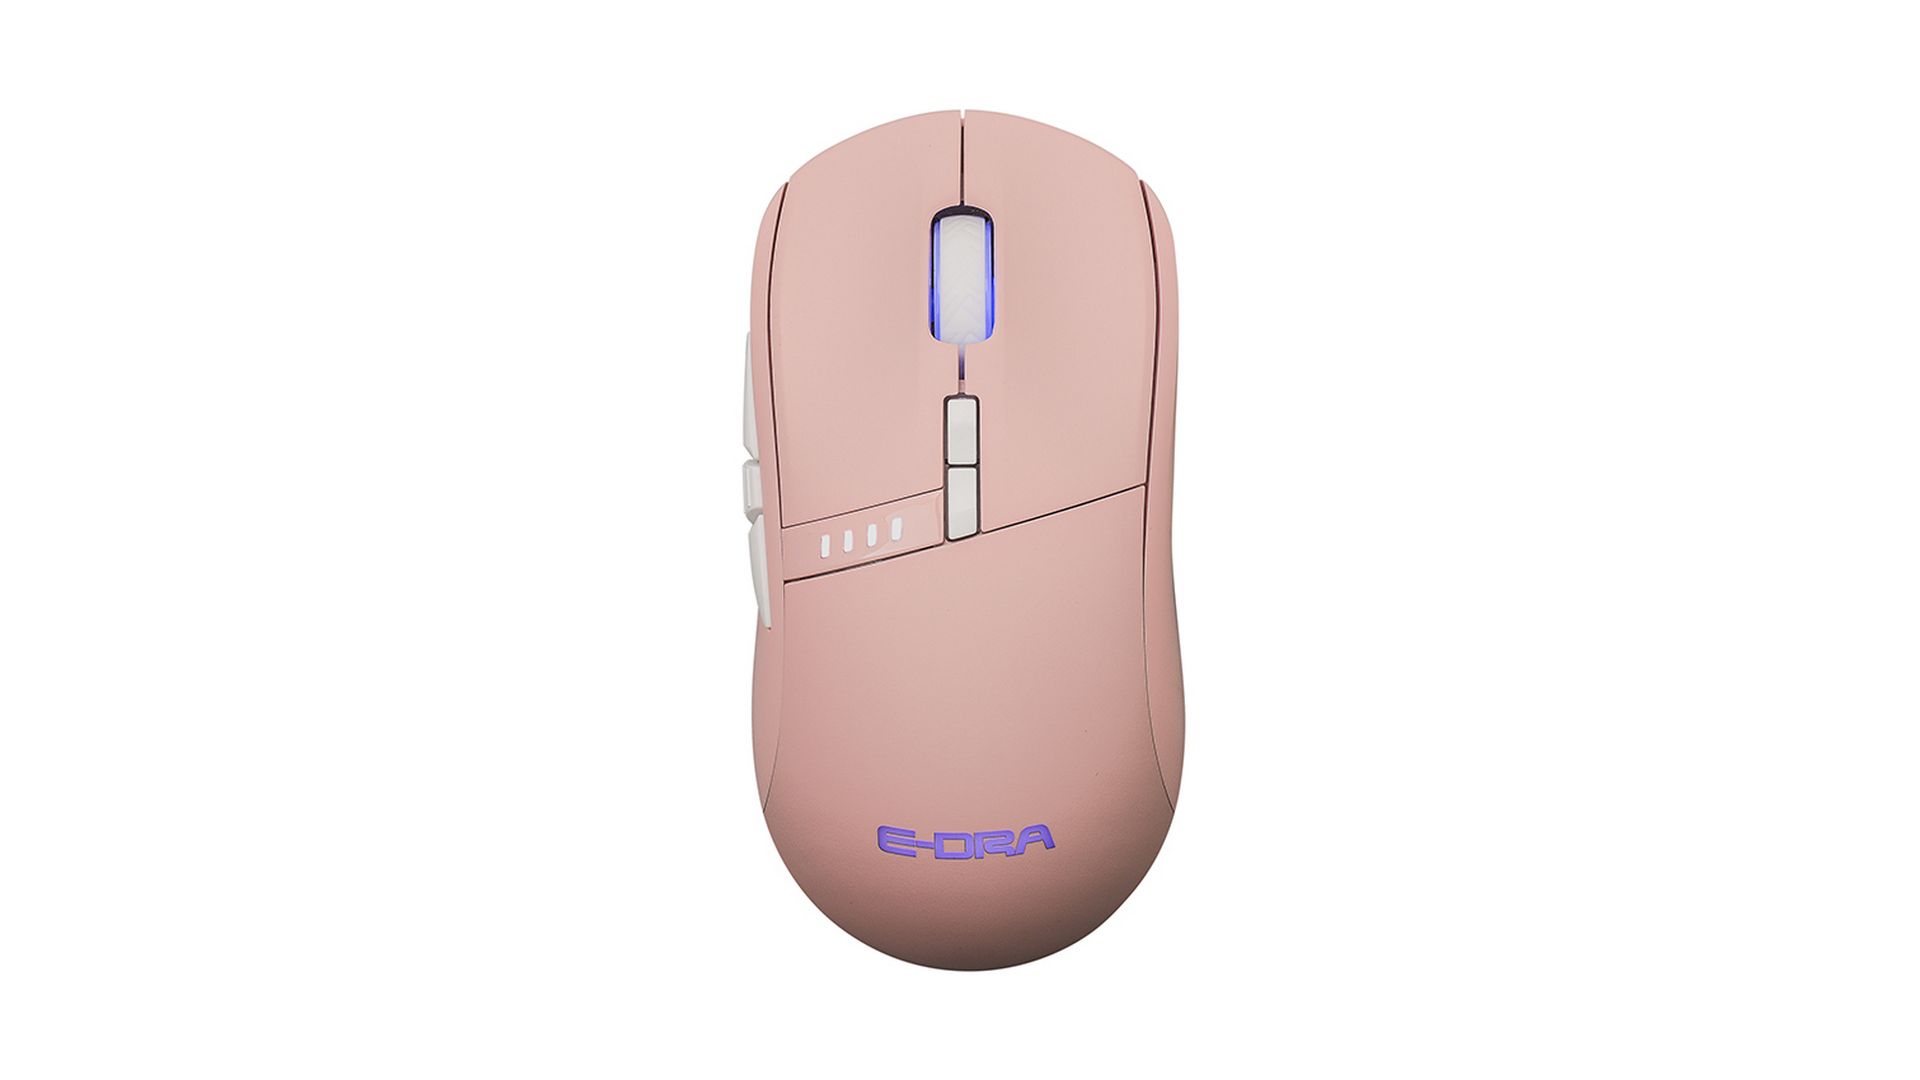 Chuột máy tính E-Dra EM620W (Pink)